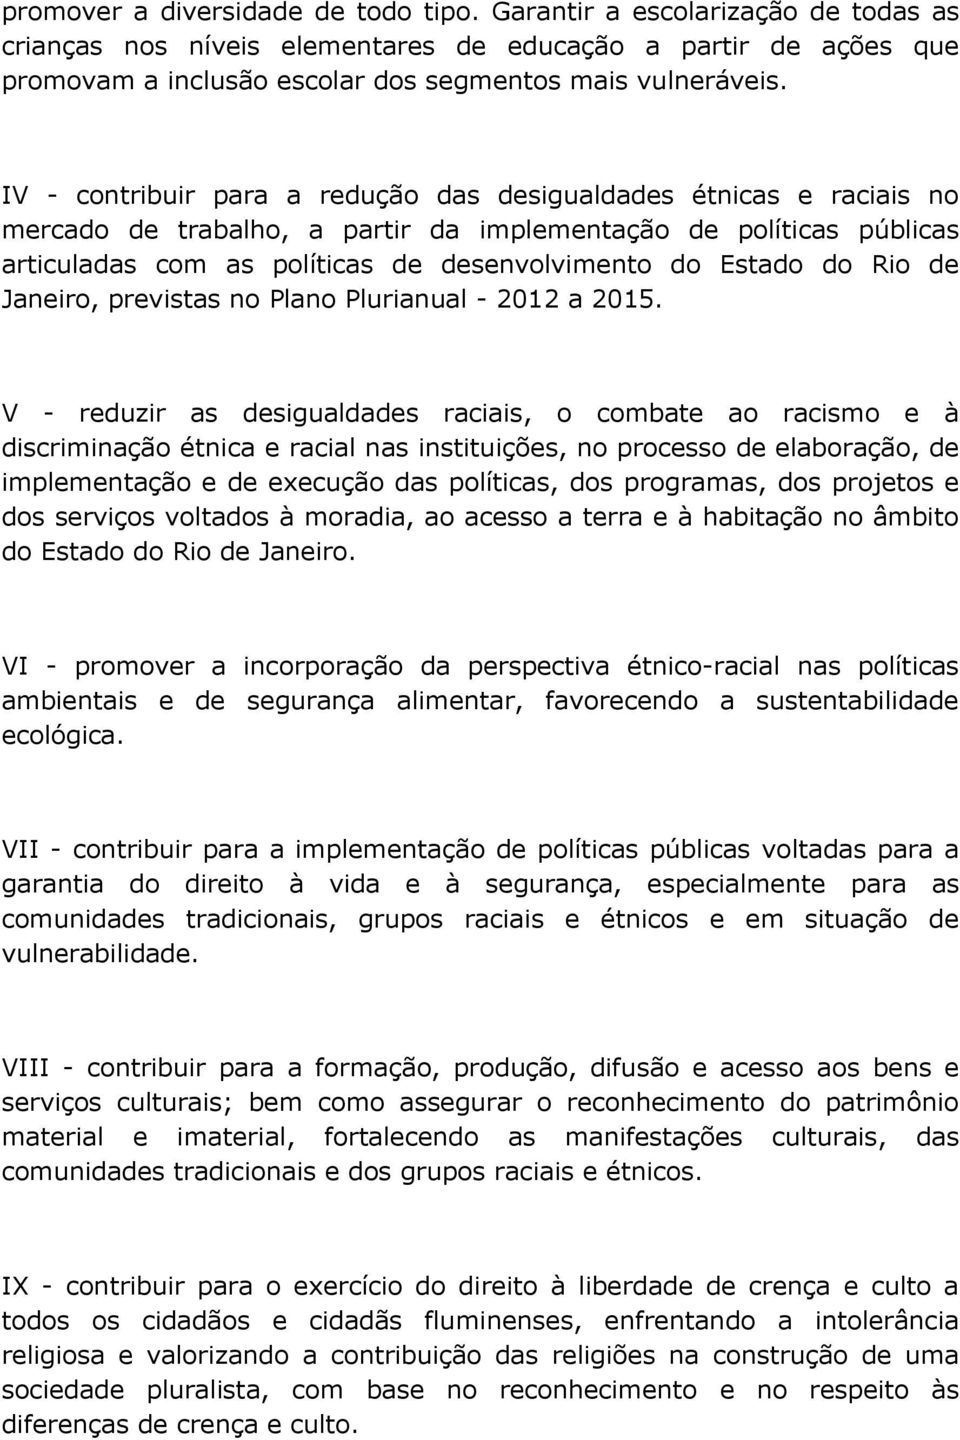 Rio de Janeiro, previstas no Plano Plurianual - 2012 a 2015.